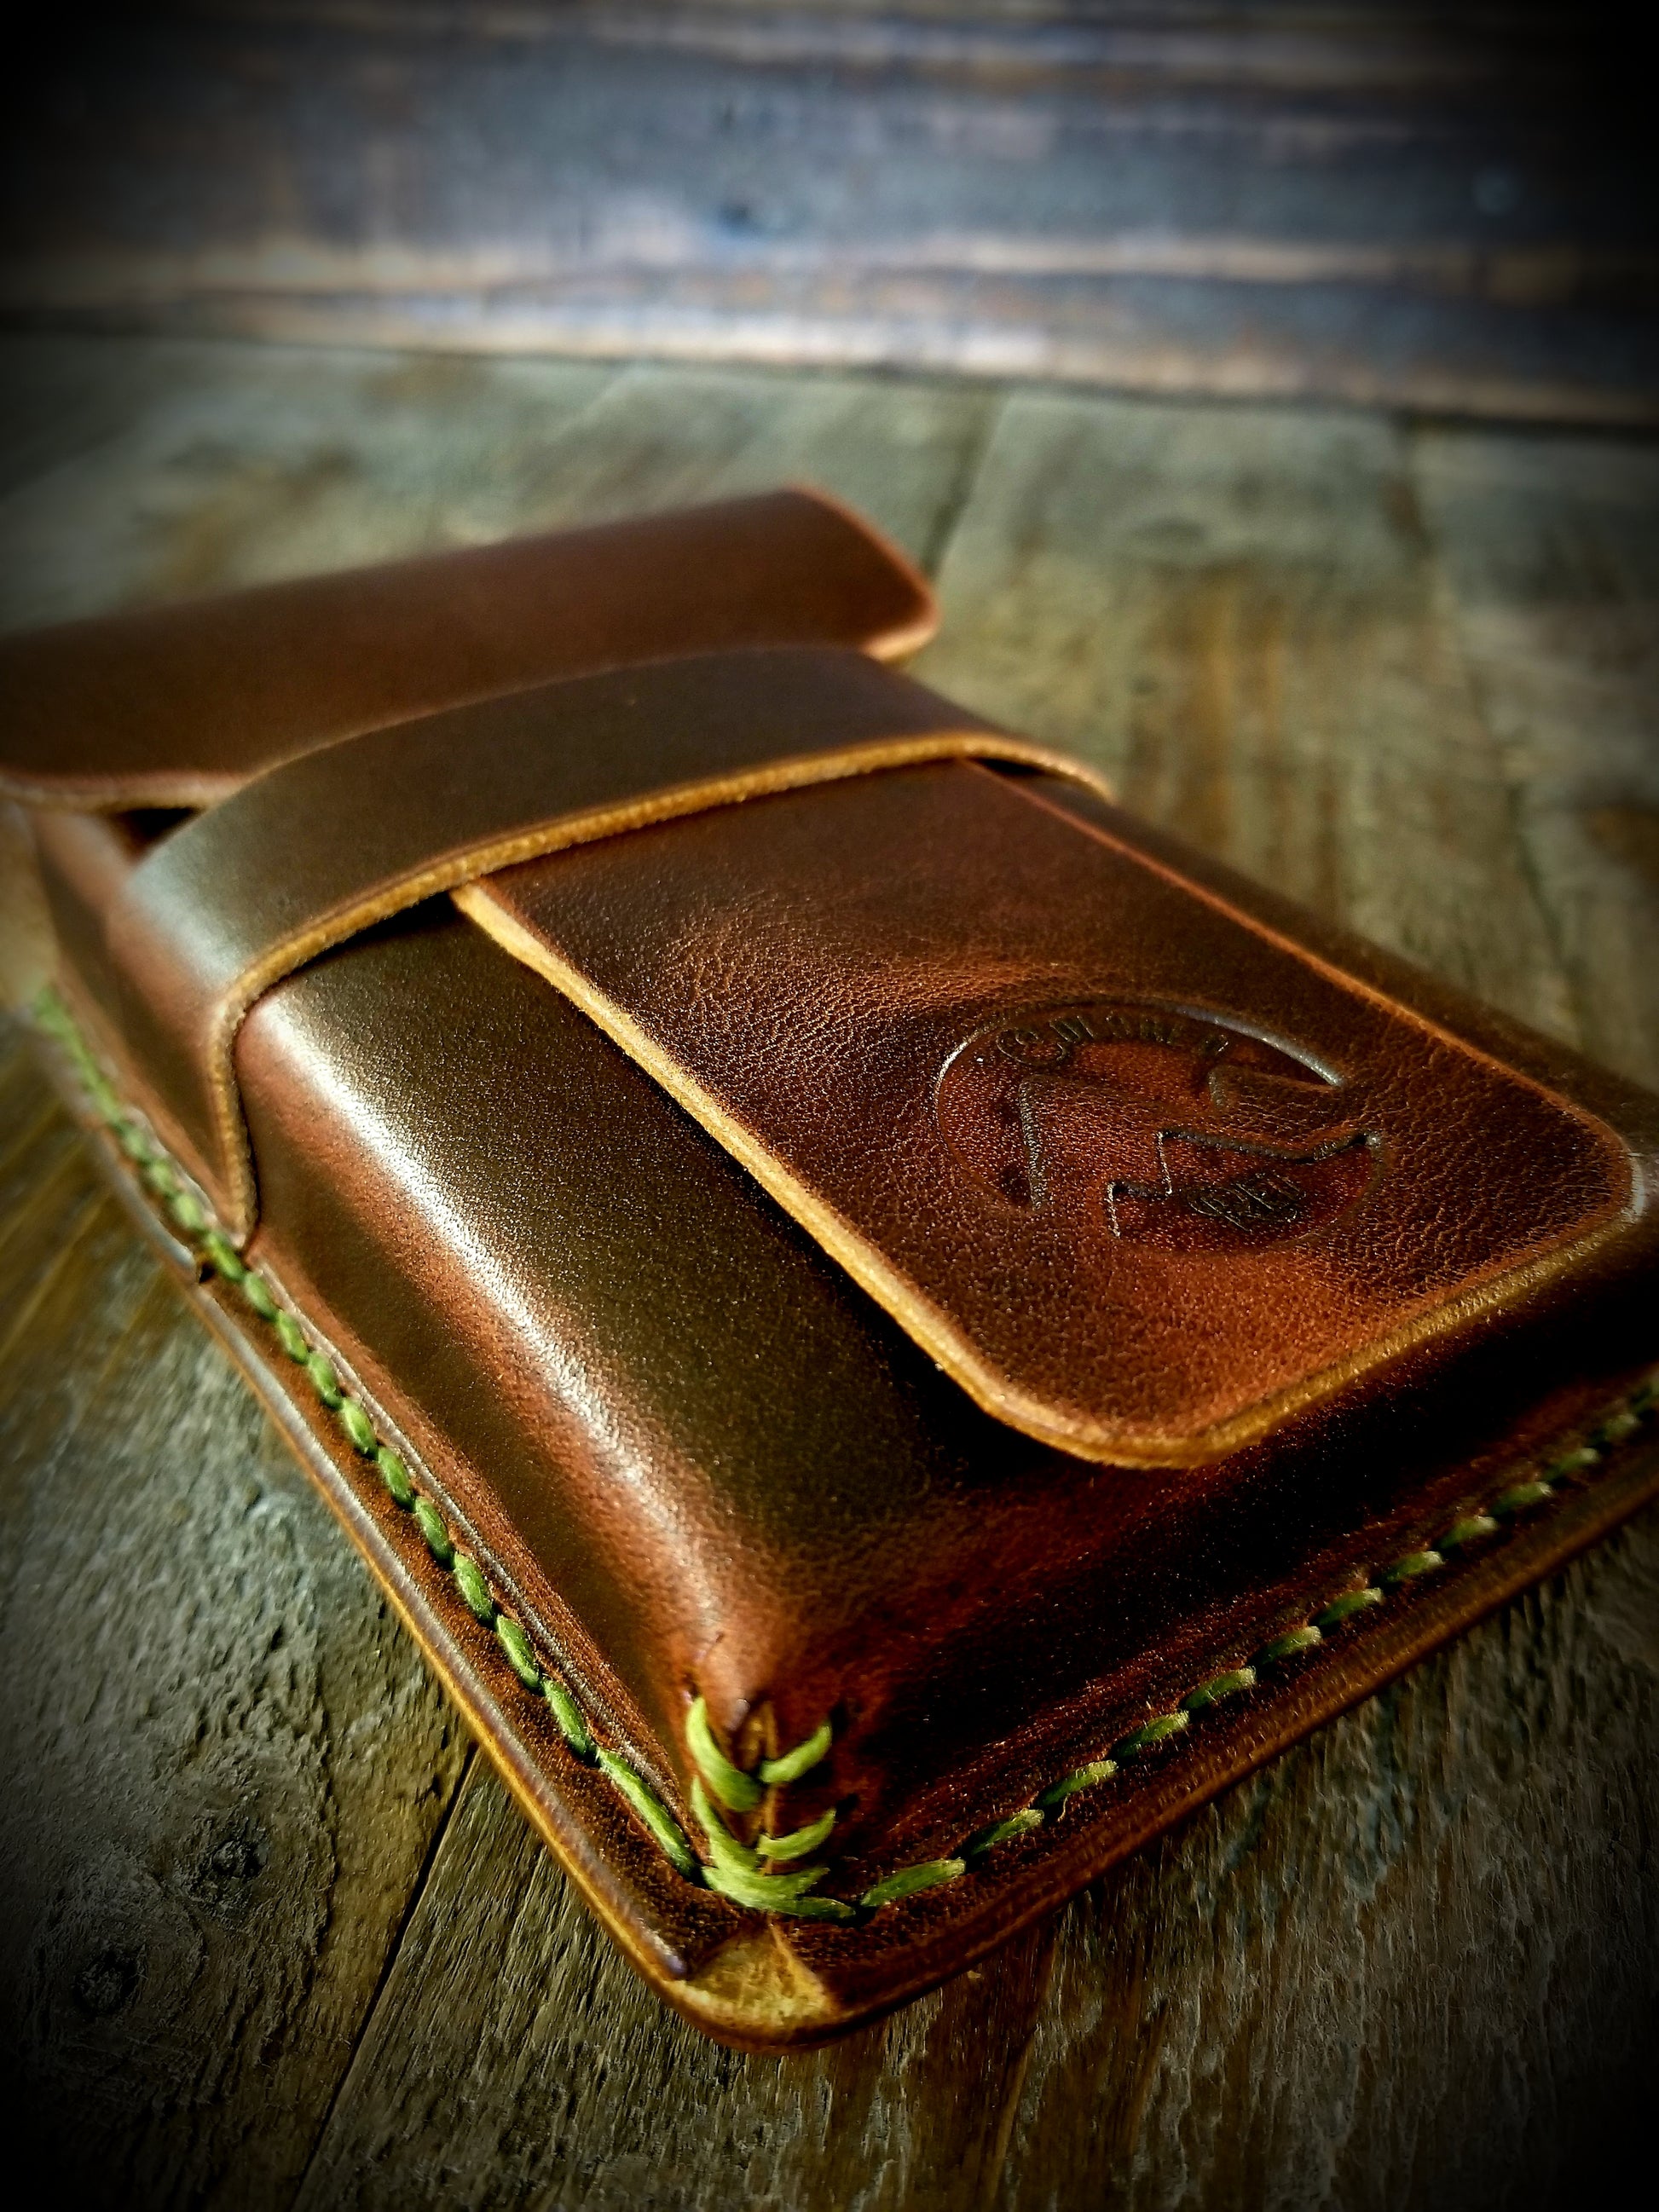 Oliva LE 3-Cigar Leather Case (Tan)